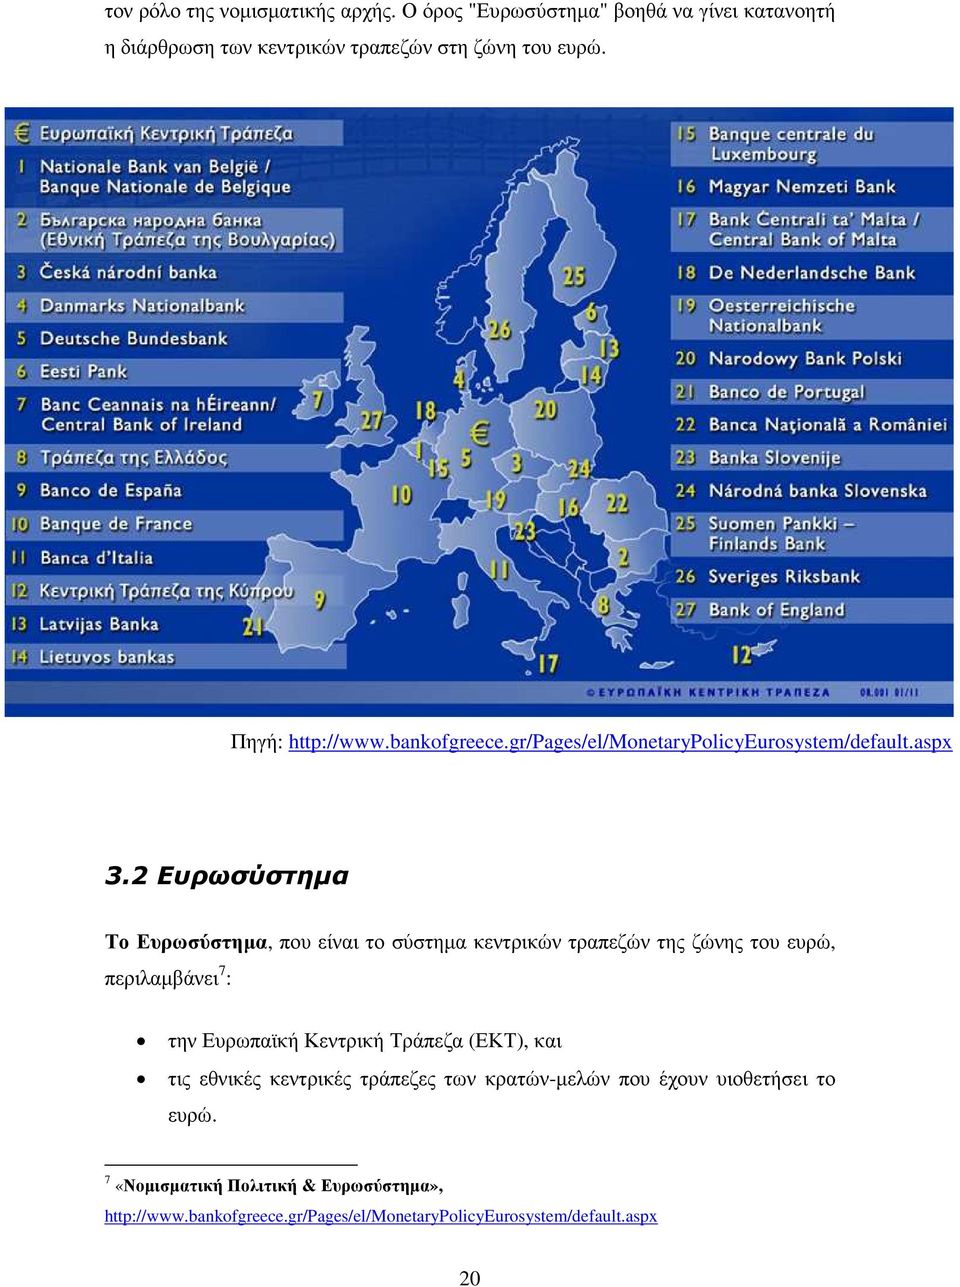 2 Ευρωσύστηµα Το Ευρωσύστηµα, που είναι το σύστηµα κεντρικών τραπεζών της ζώνης του ευρώ, περιλαµβάνει 7 : την Ευρωπαϊκή Κεντρική Τράπεζα